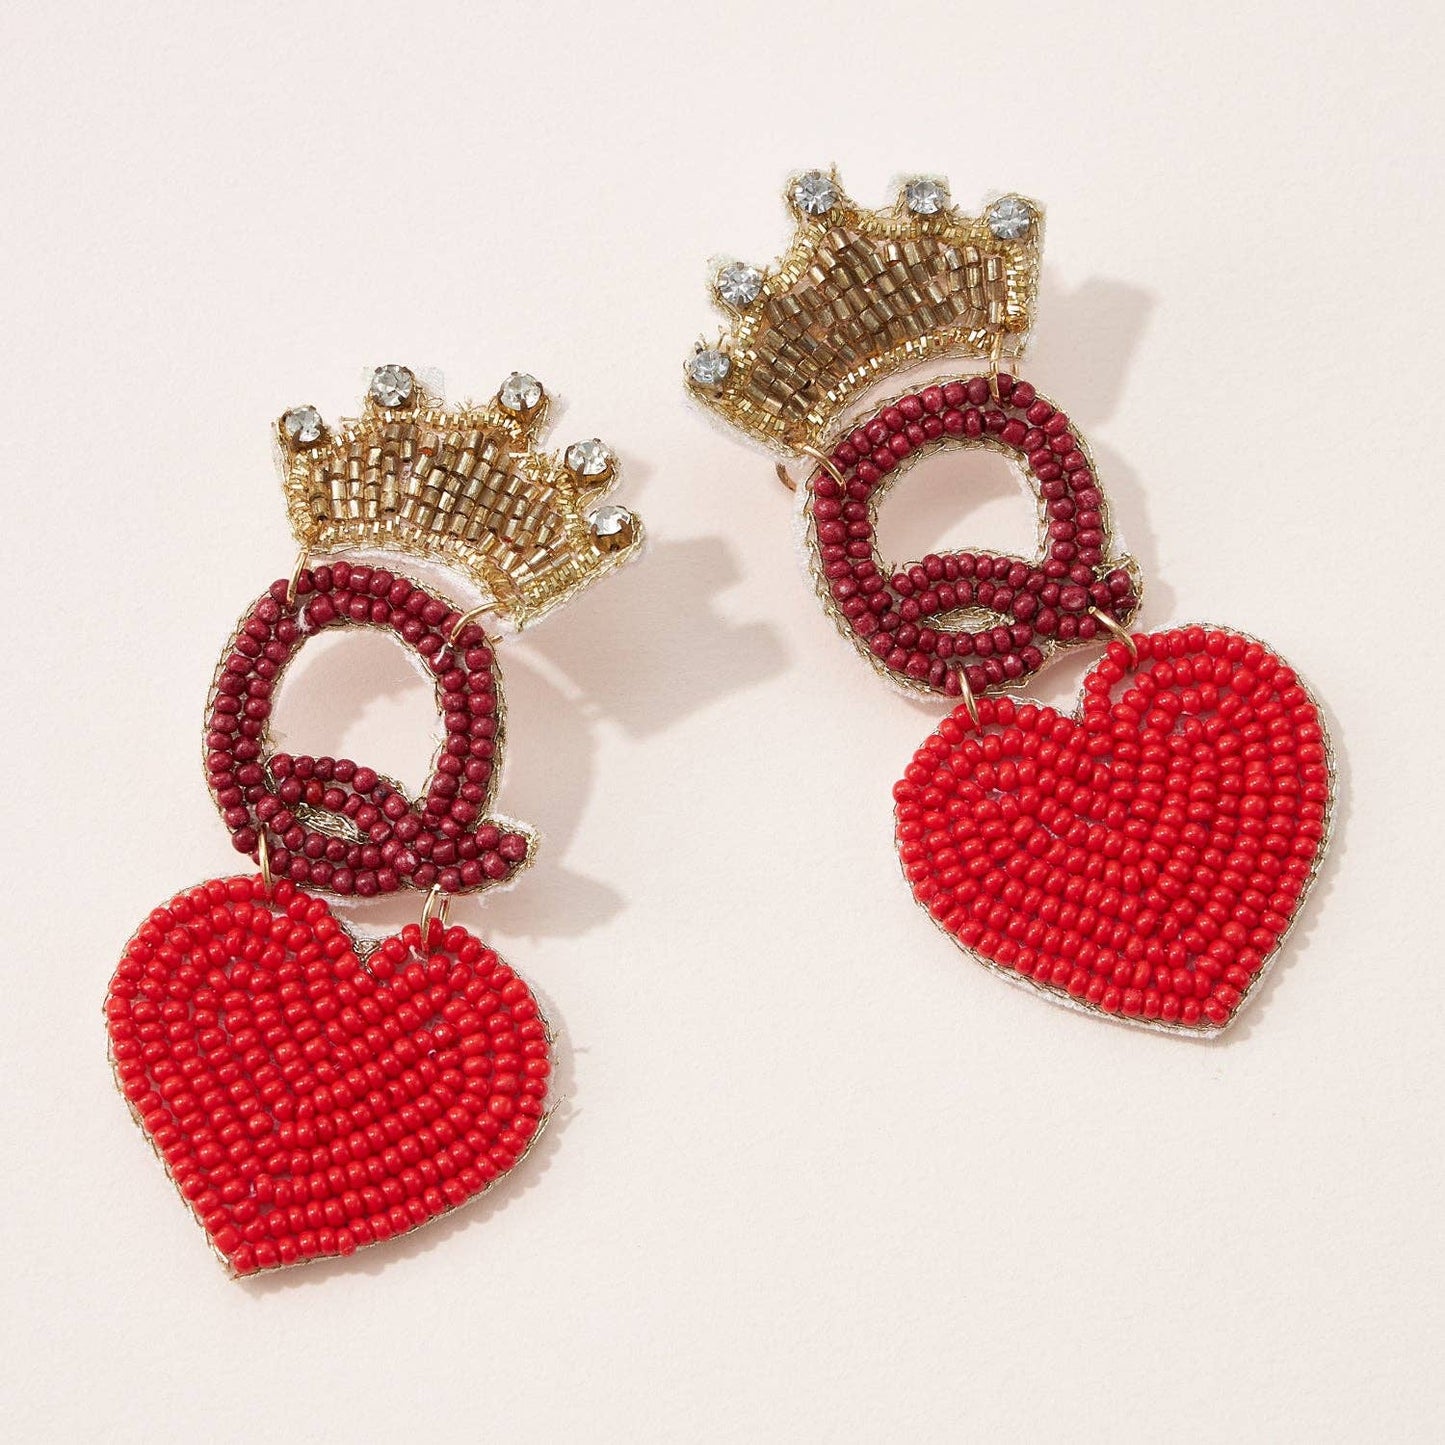 Queen of Heart Beaded Earrings